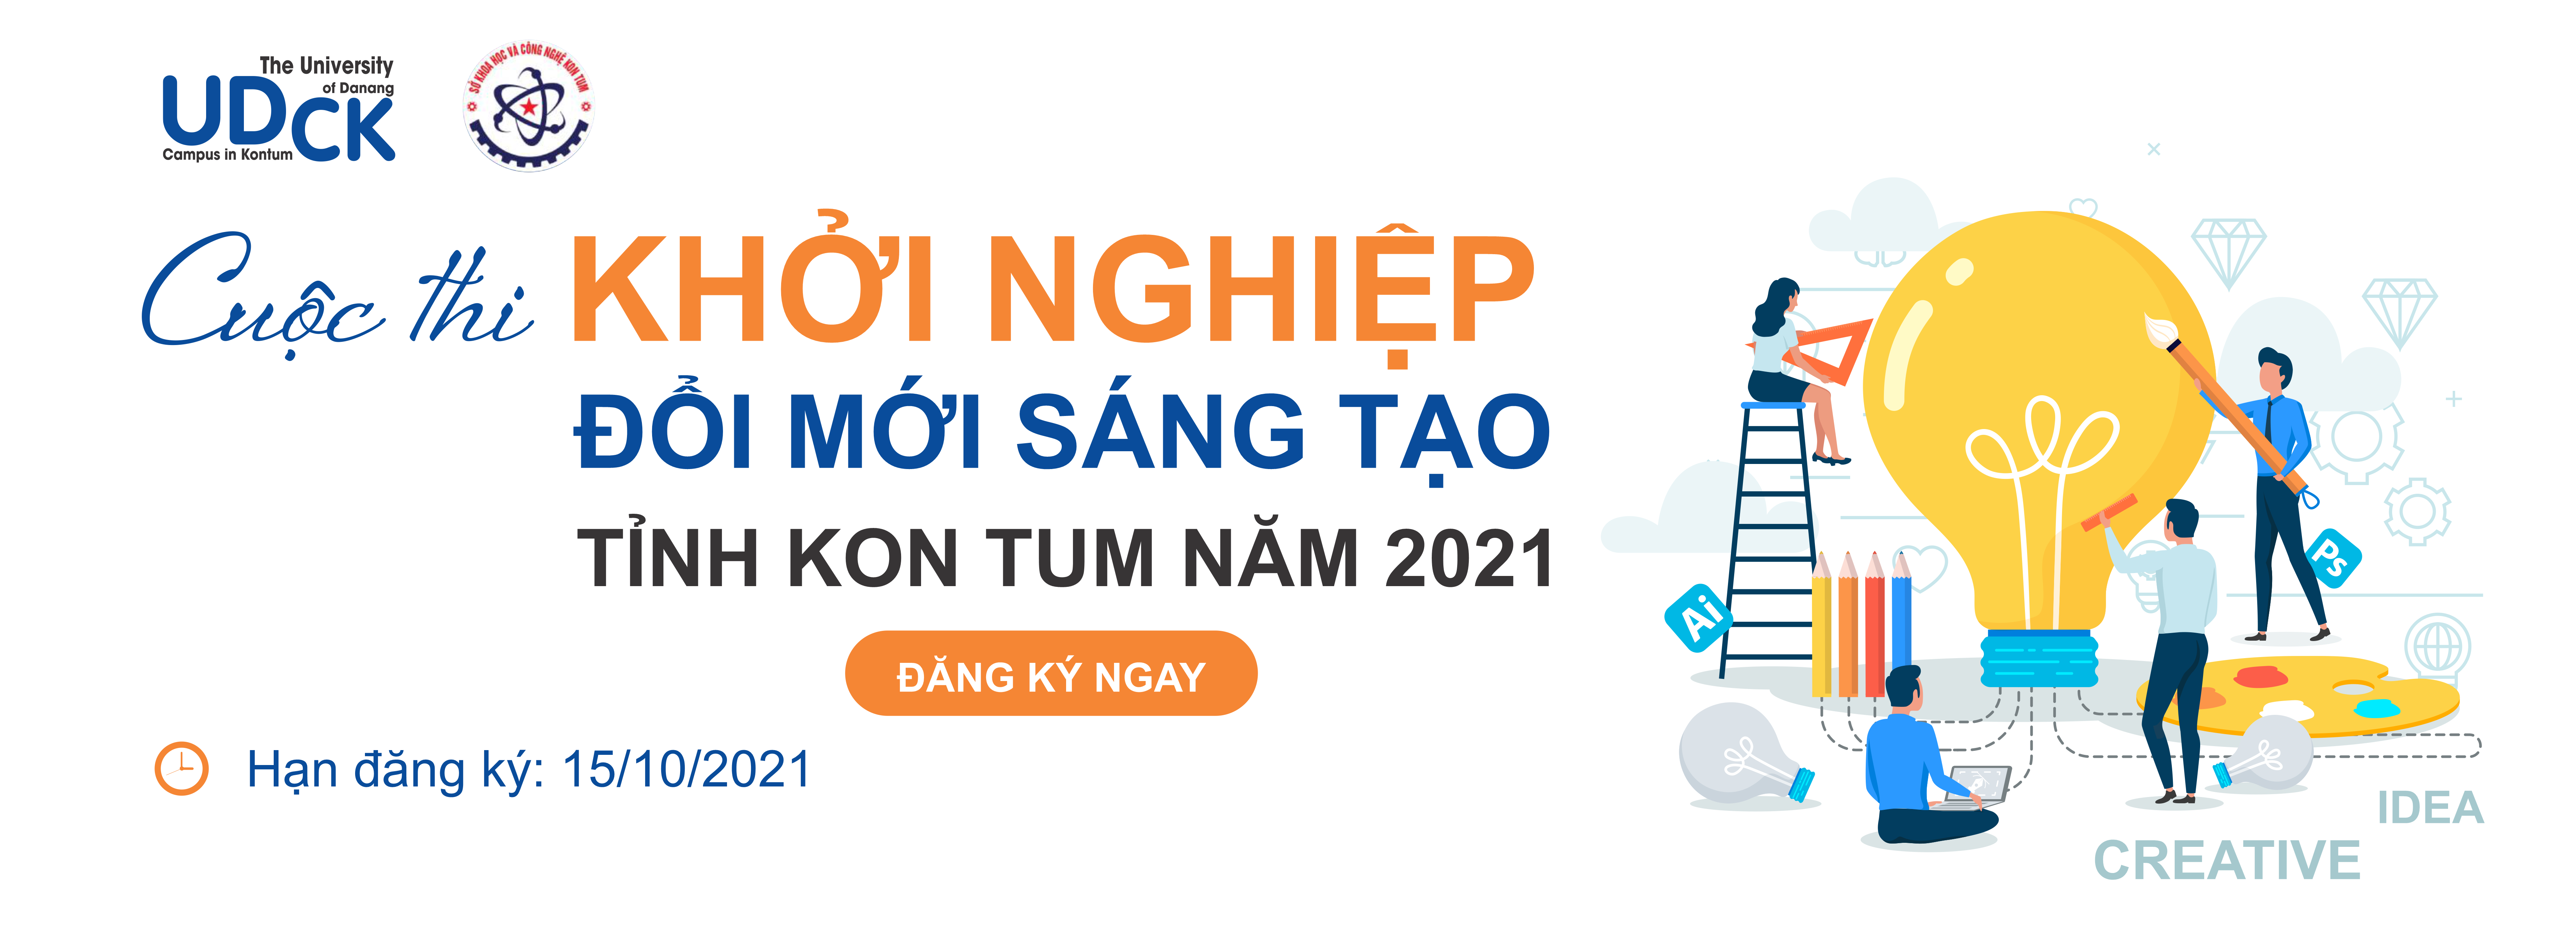 Cuộc thi khởi nghiệp đổi mới sáng tạo tỉnh Kon Tum năm 2021